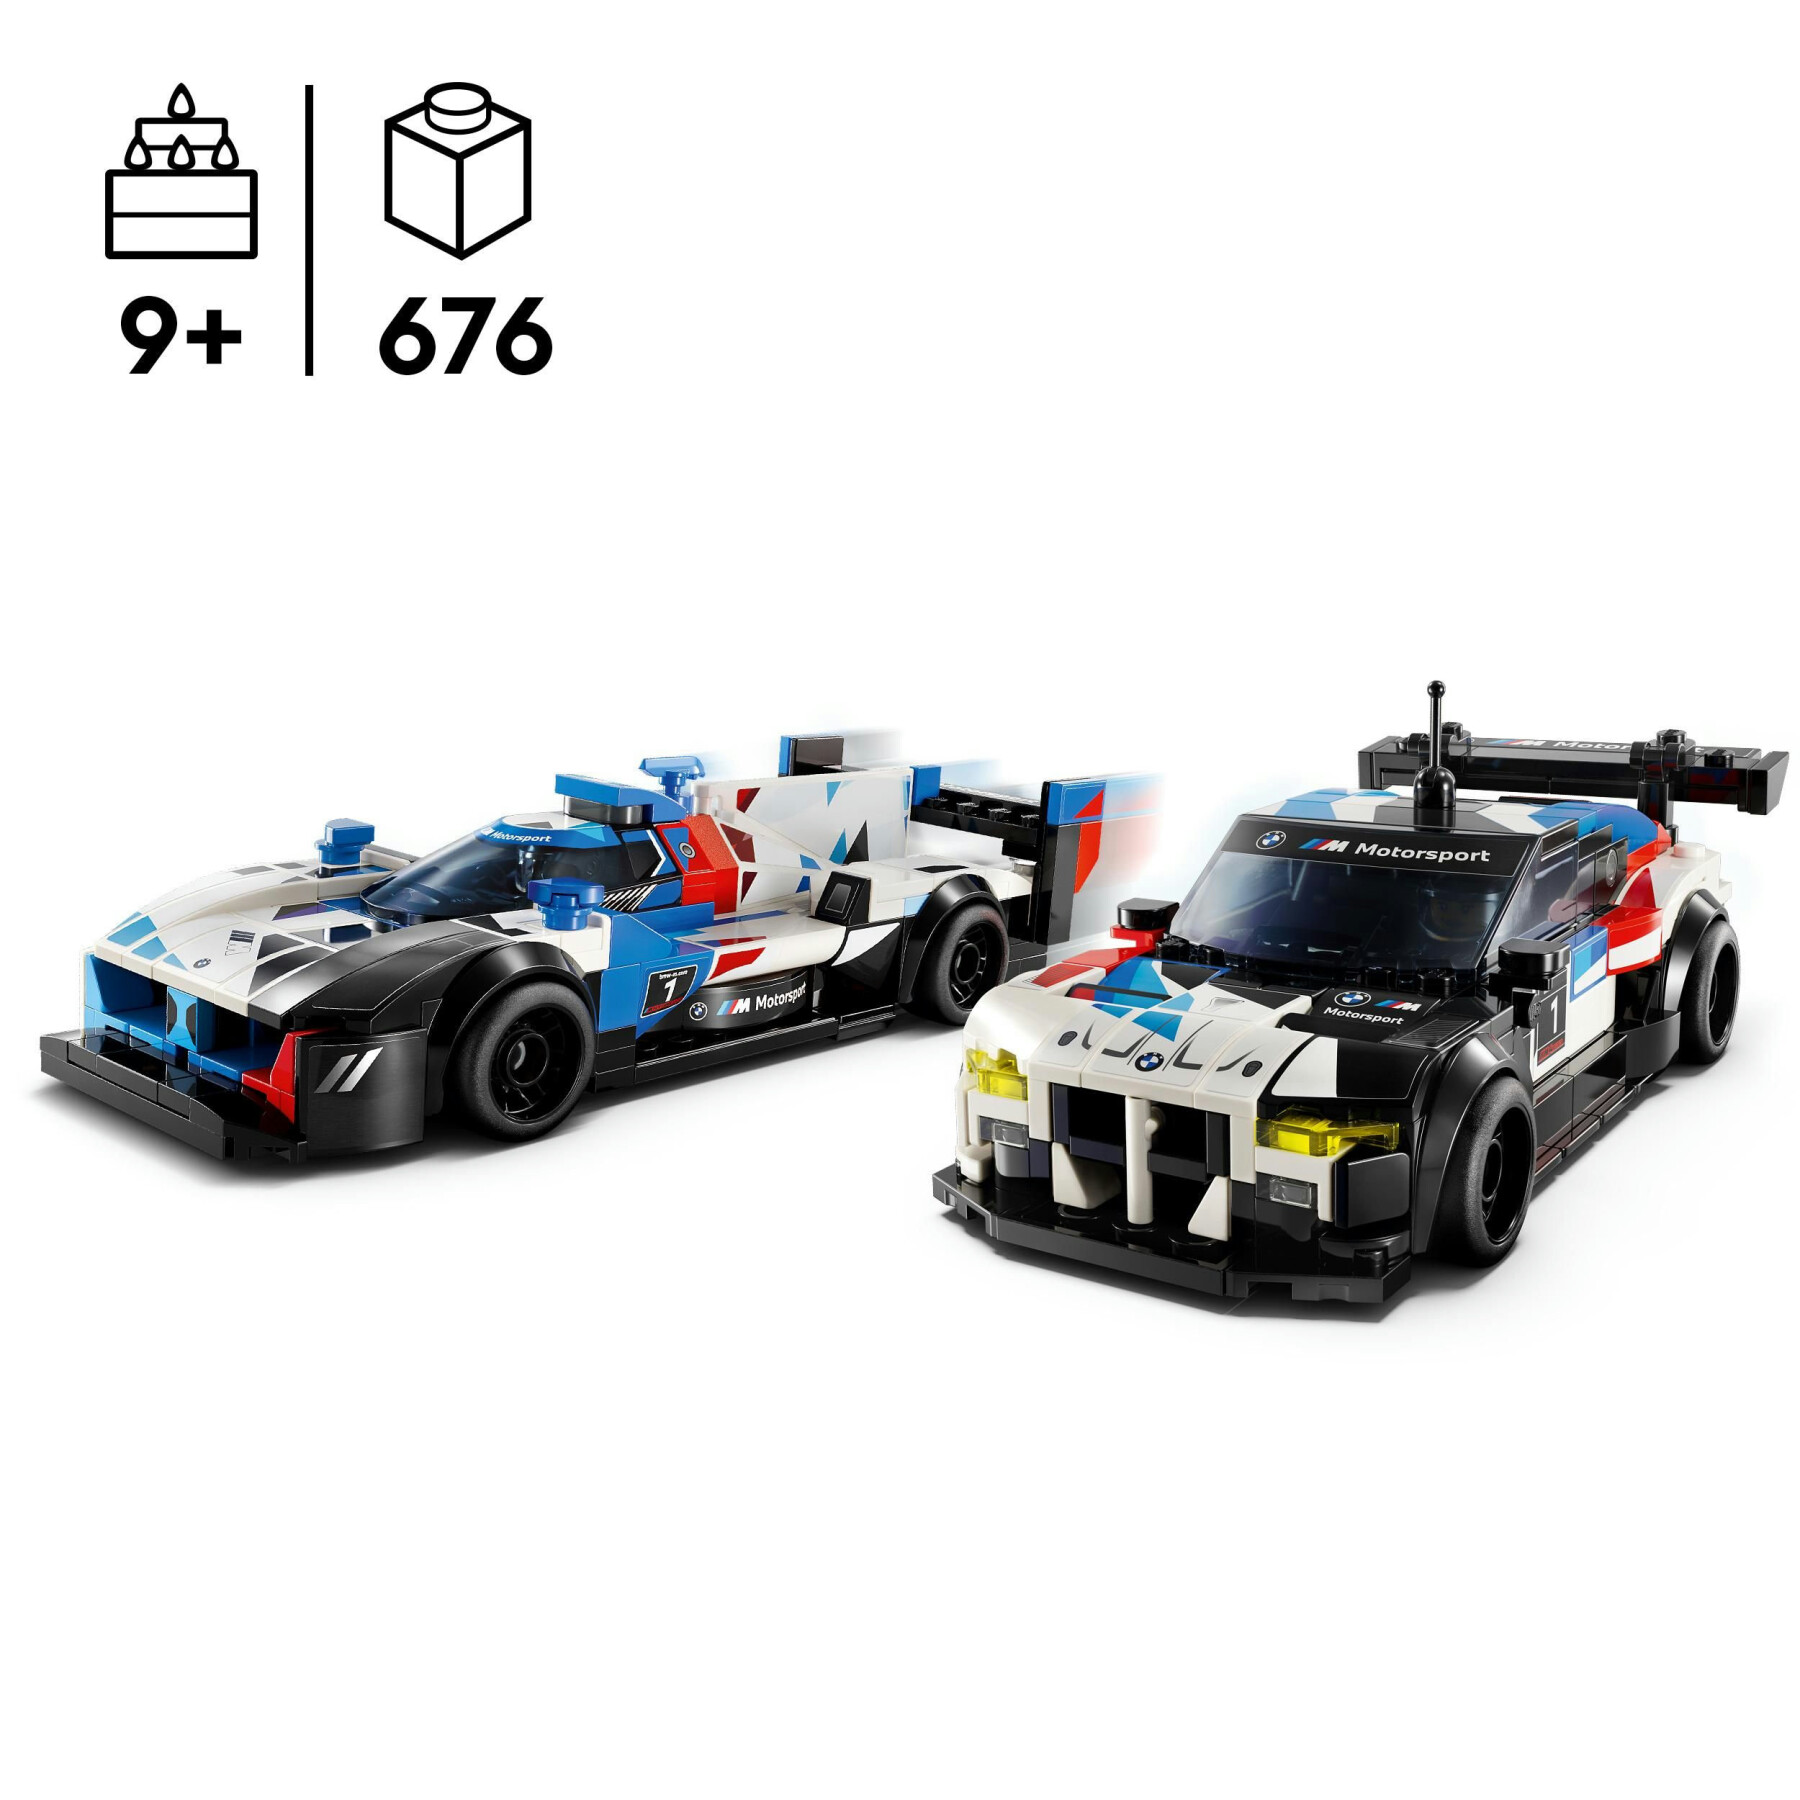 Lego speed champions 76922 auto da corsa bmw m4 gt3 e bmw m hybrid v8, 2 modellini di macchine giocattolo per bambini 9+ anni - LEGO SPEED CHAMPIONS